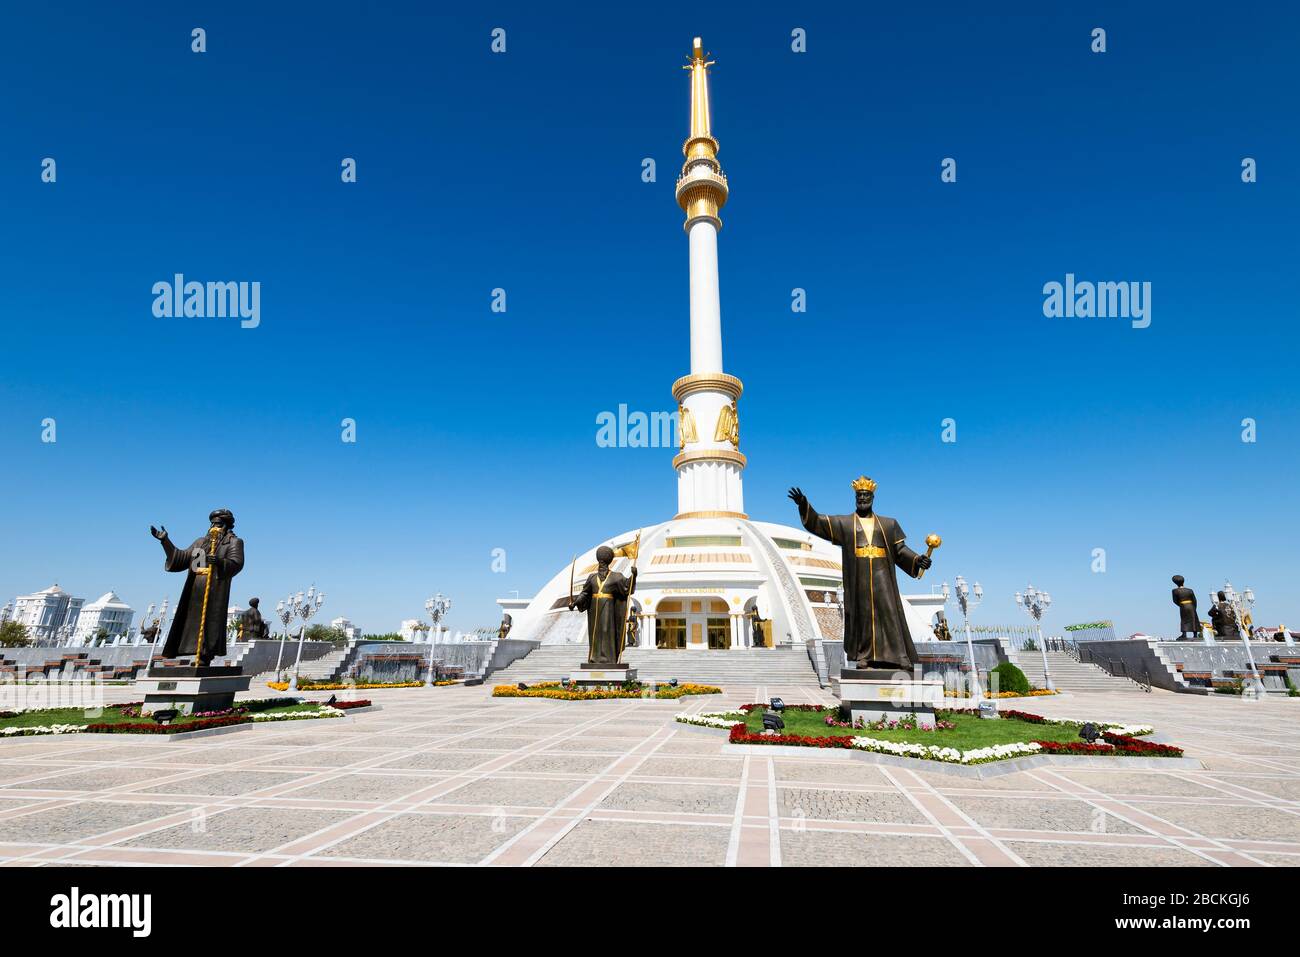 Monumento a la Independencia en Ashgabat, Turkmenistán con estatuas de bronce en honor a los héroes y líderes turcomanos. Situado en el Parque de la Independencia. Foto de stock